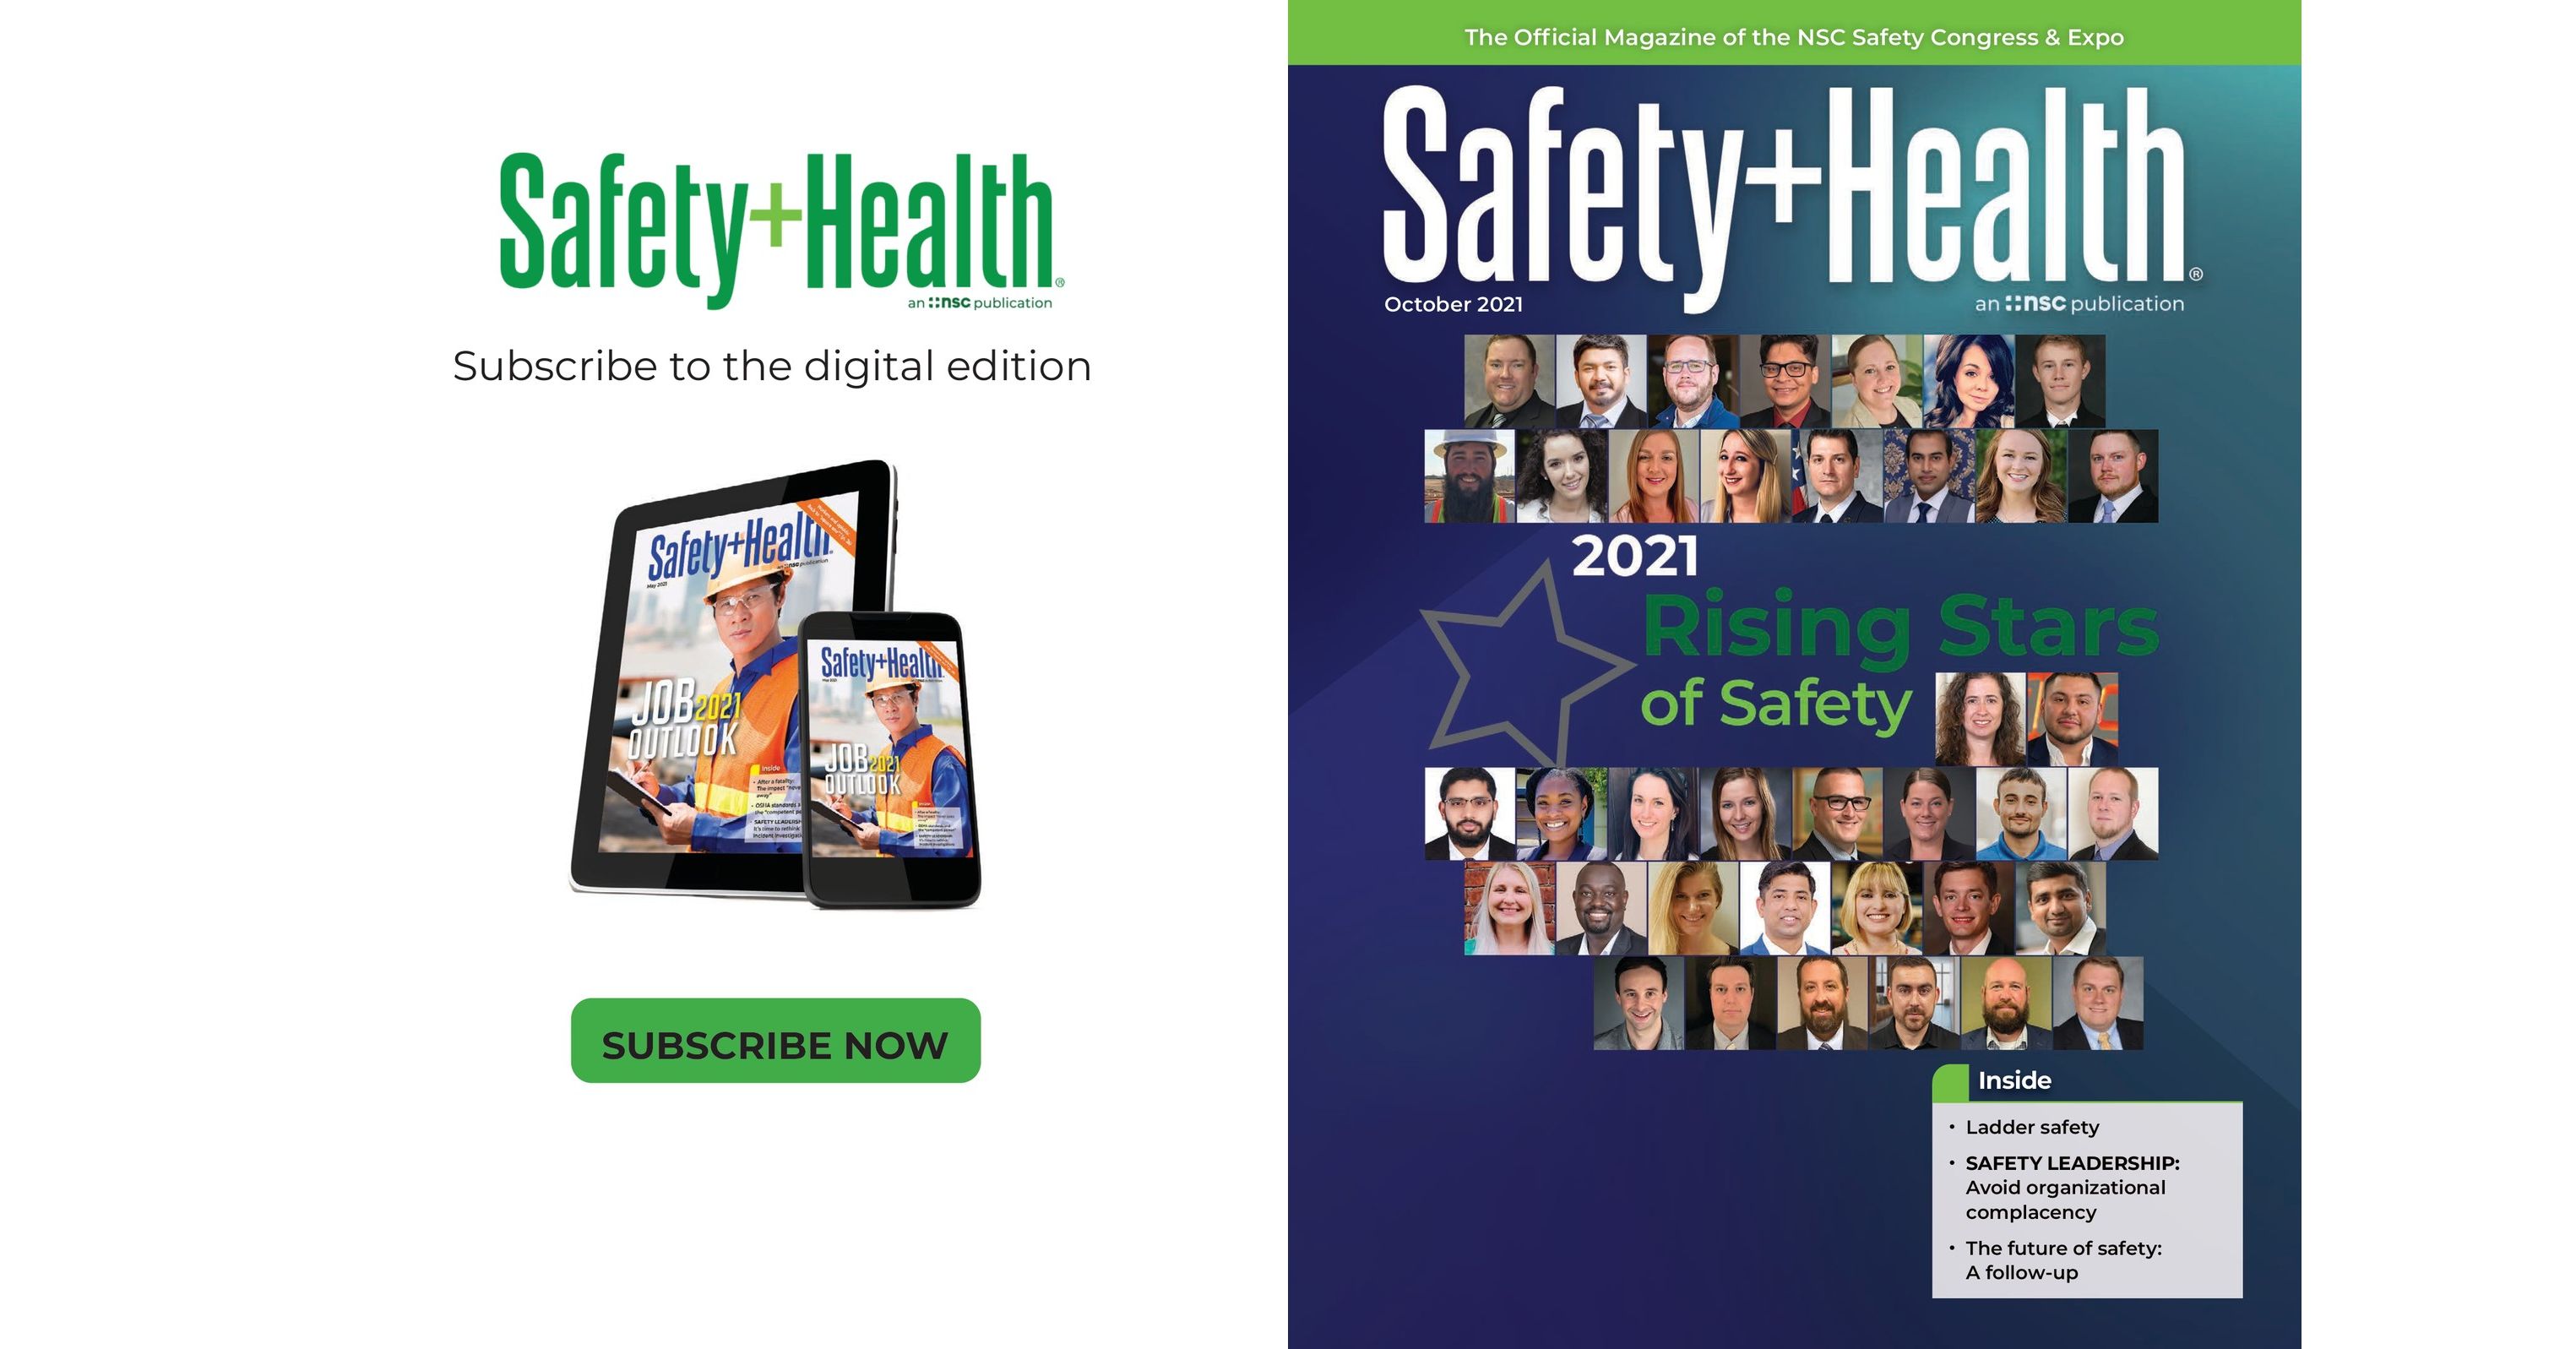 Safety+Health October 2021 Vol. 204 No. 4